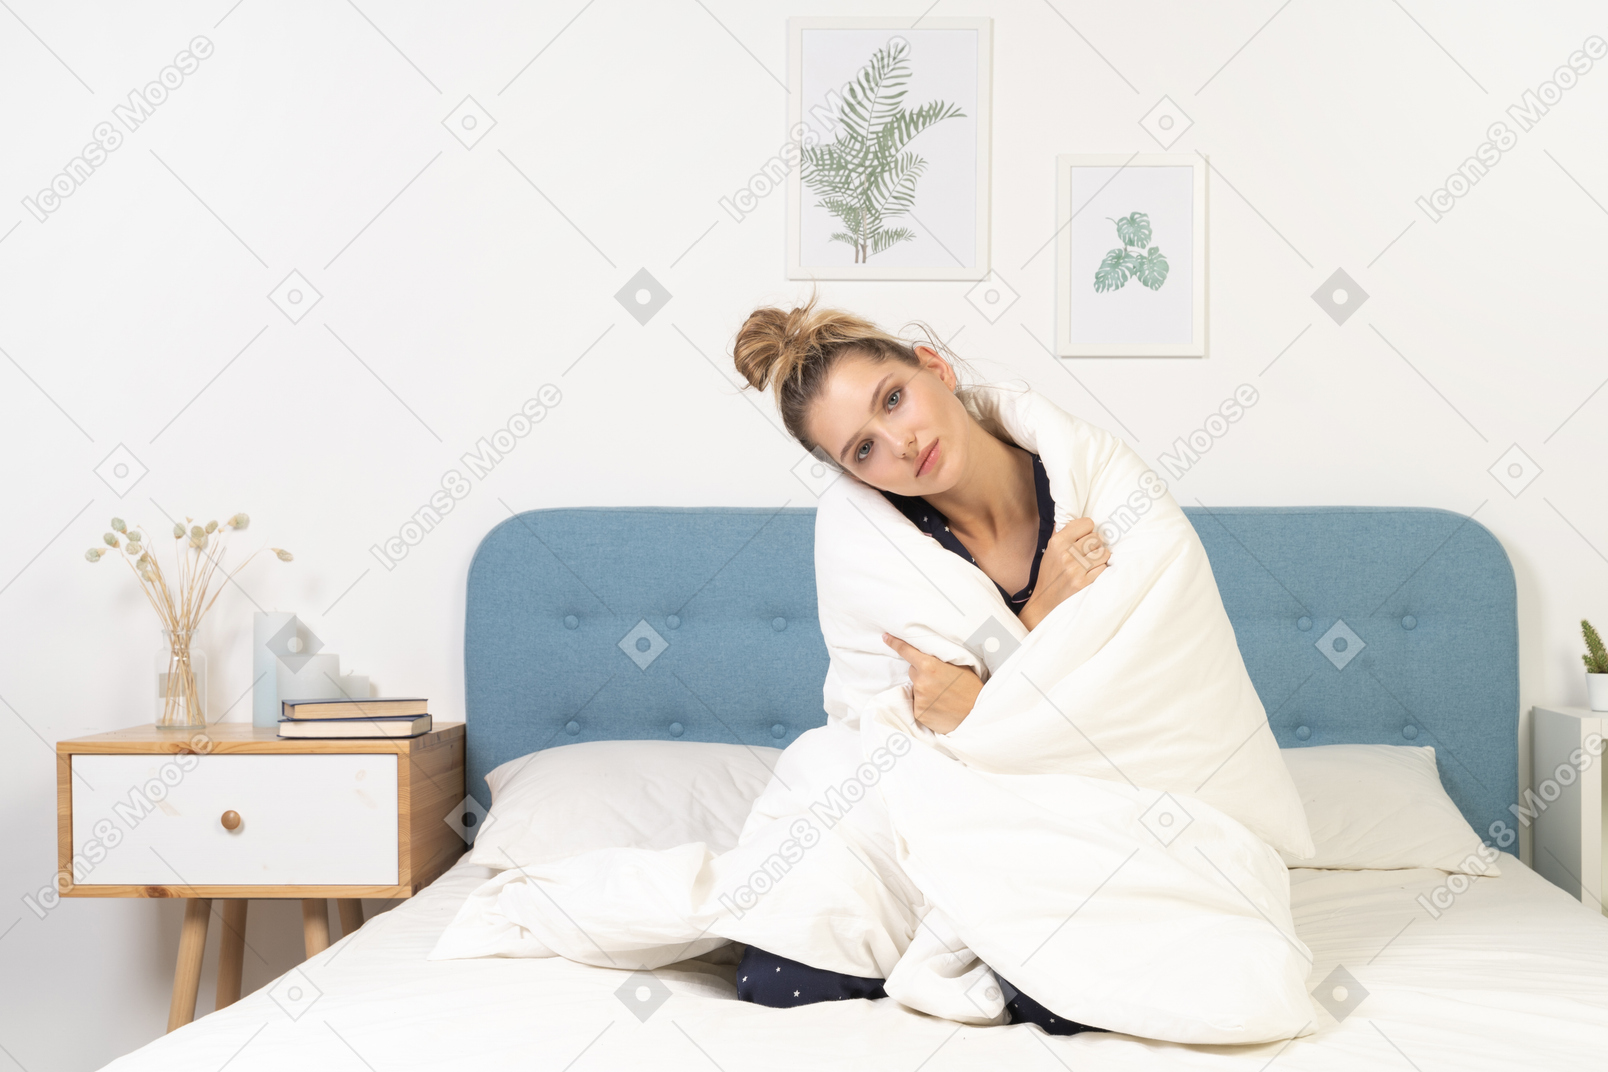 Вид спереди уставшей молодой женщины в пижаме, завернутой в одеяло, лежащей в постели